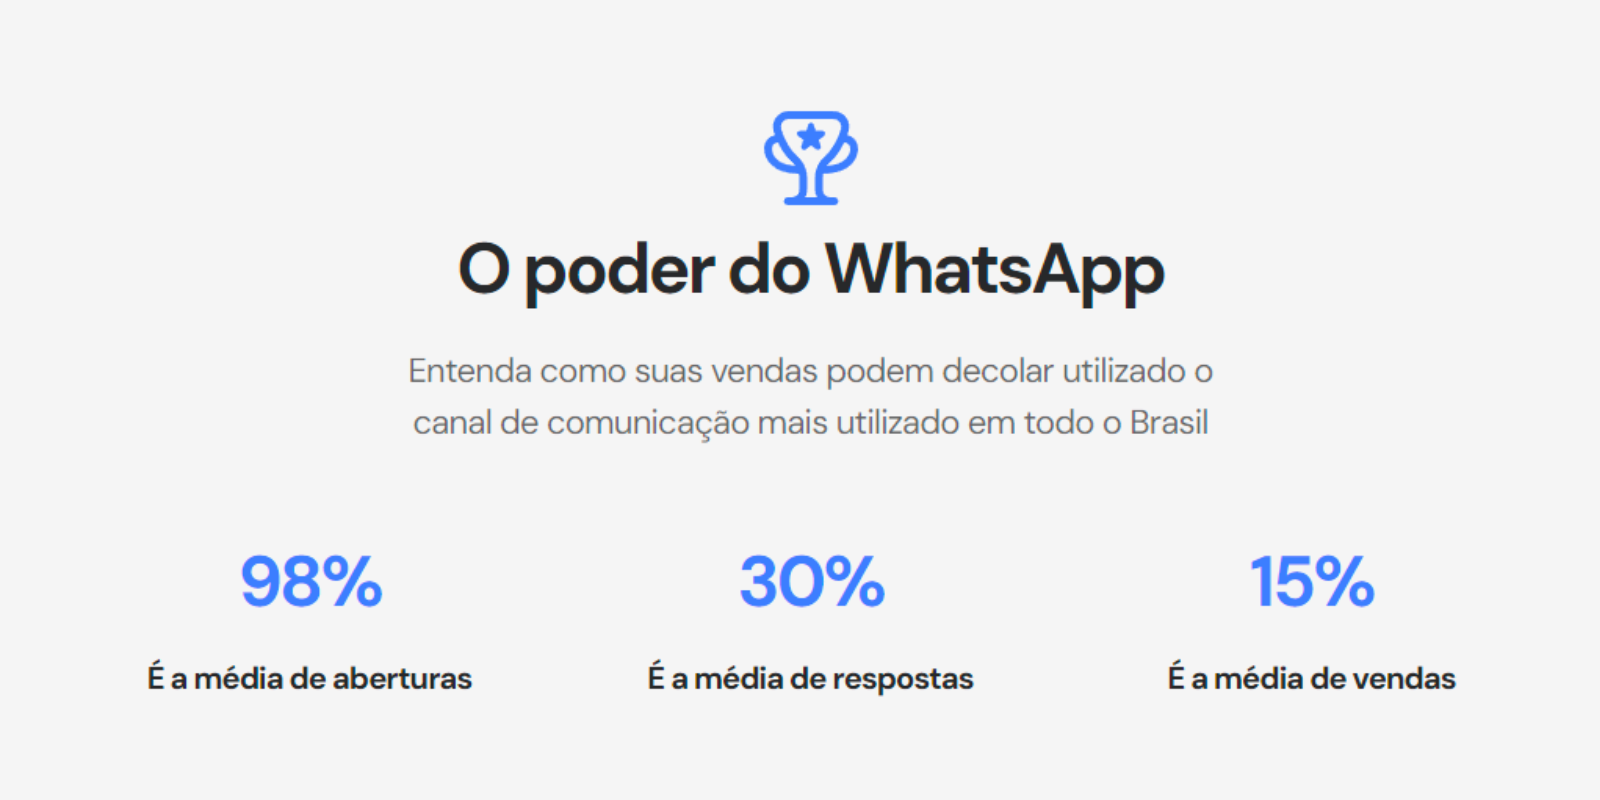 WhatsApp em Massa by Mensagex